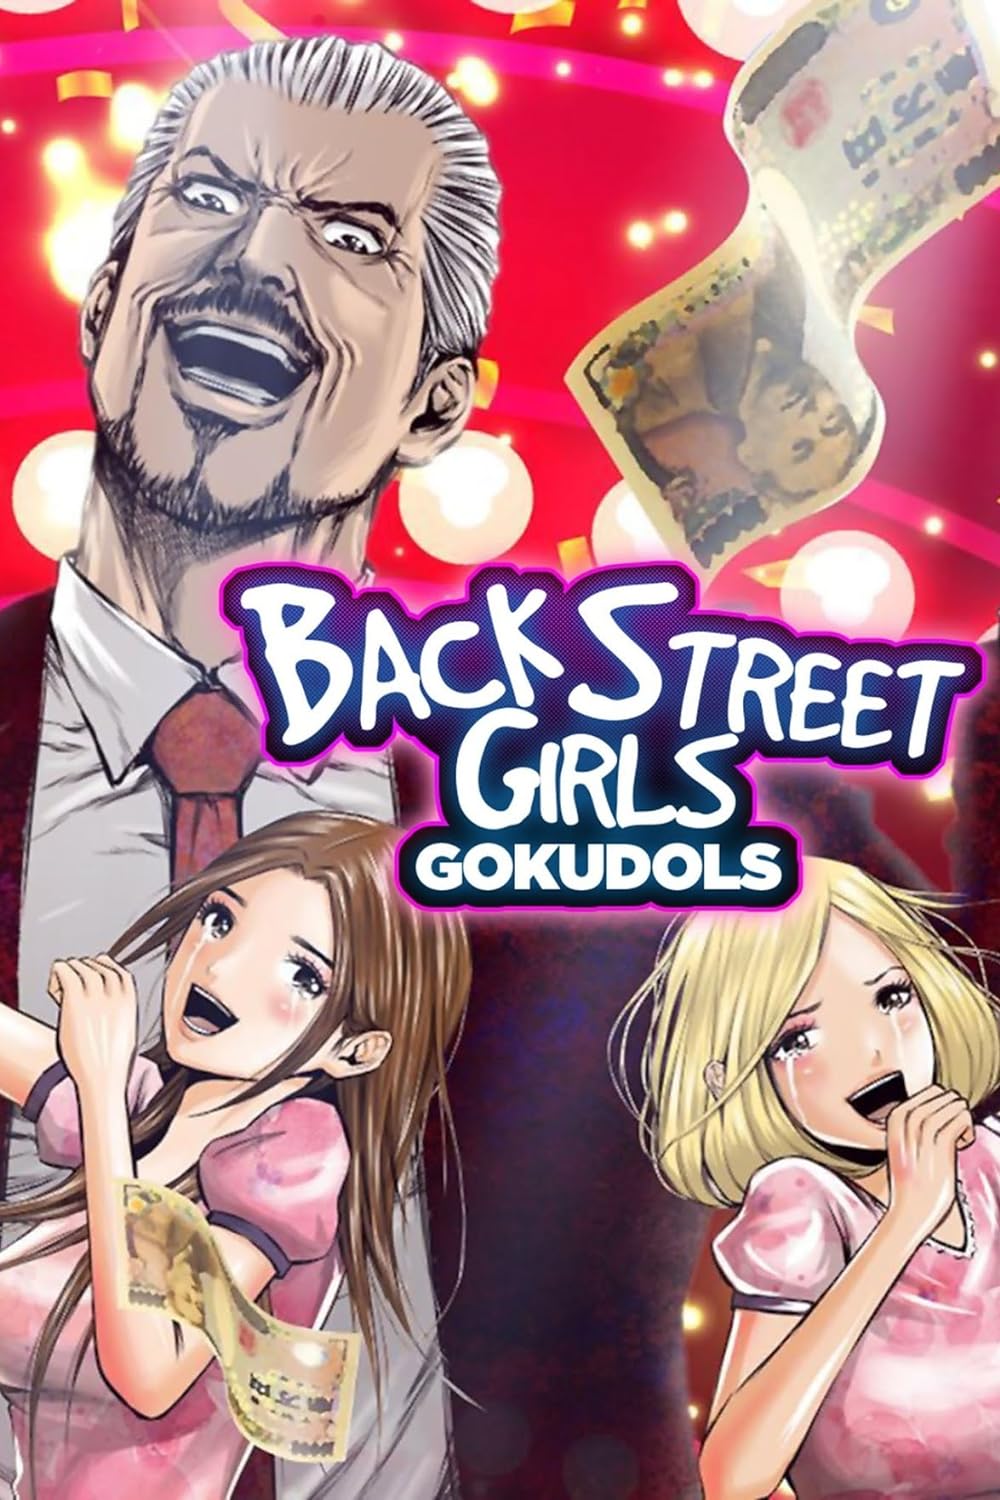 Back Street Girls